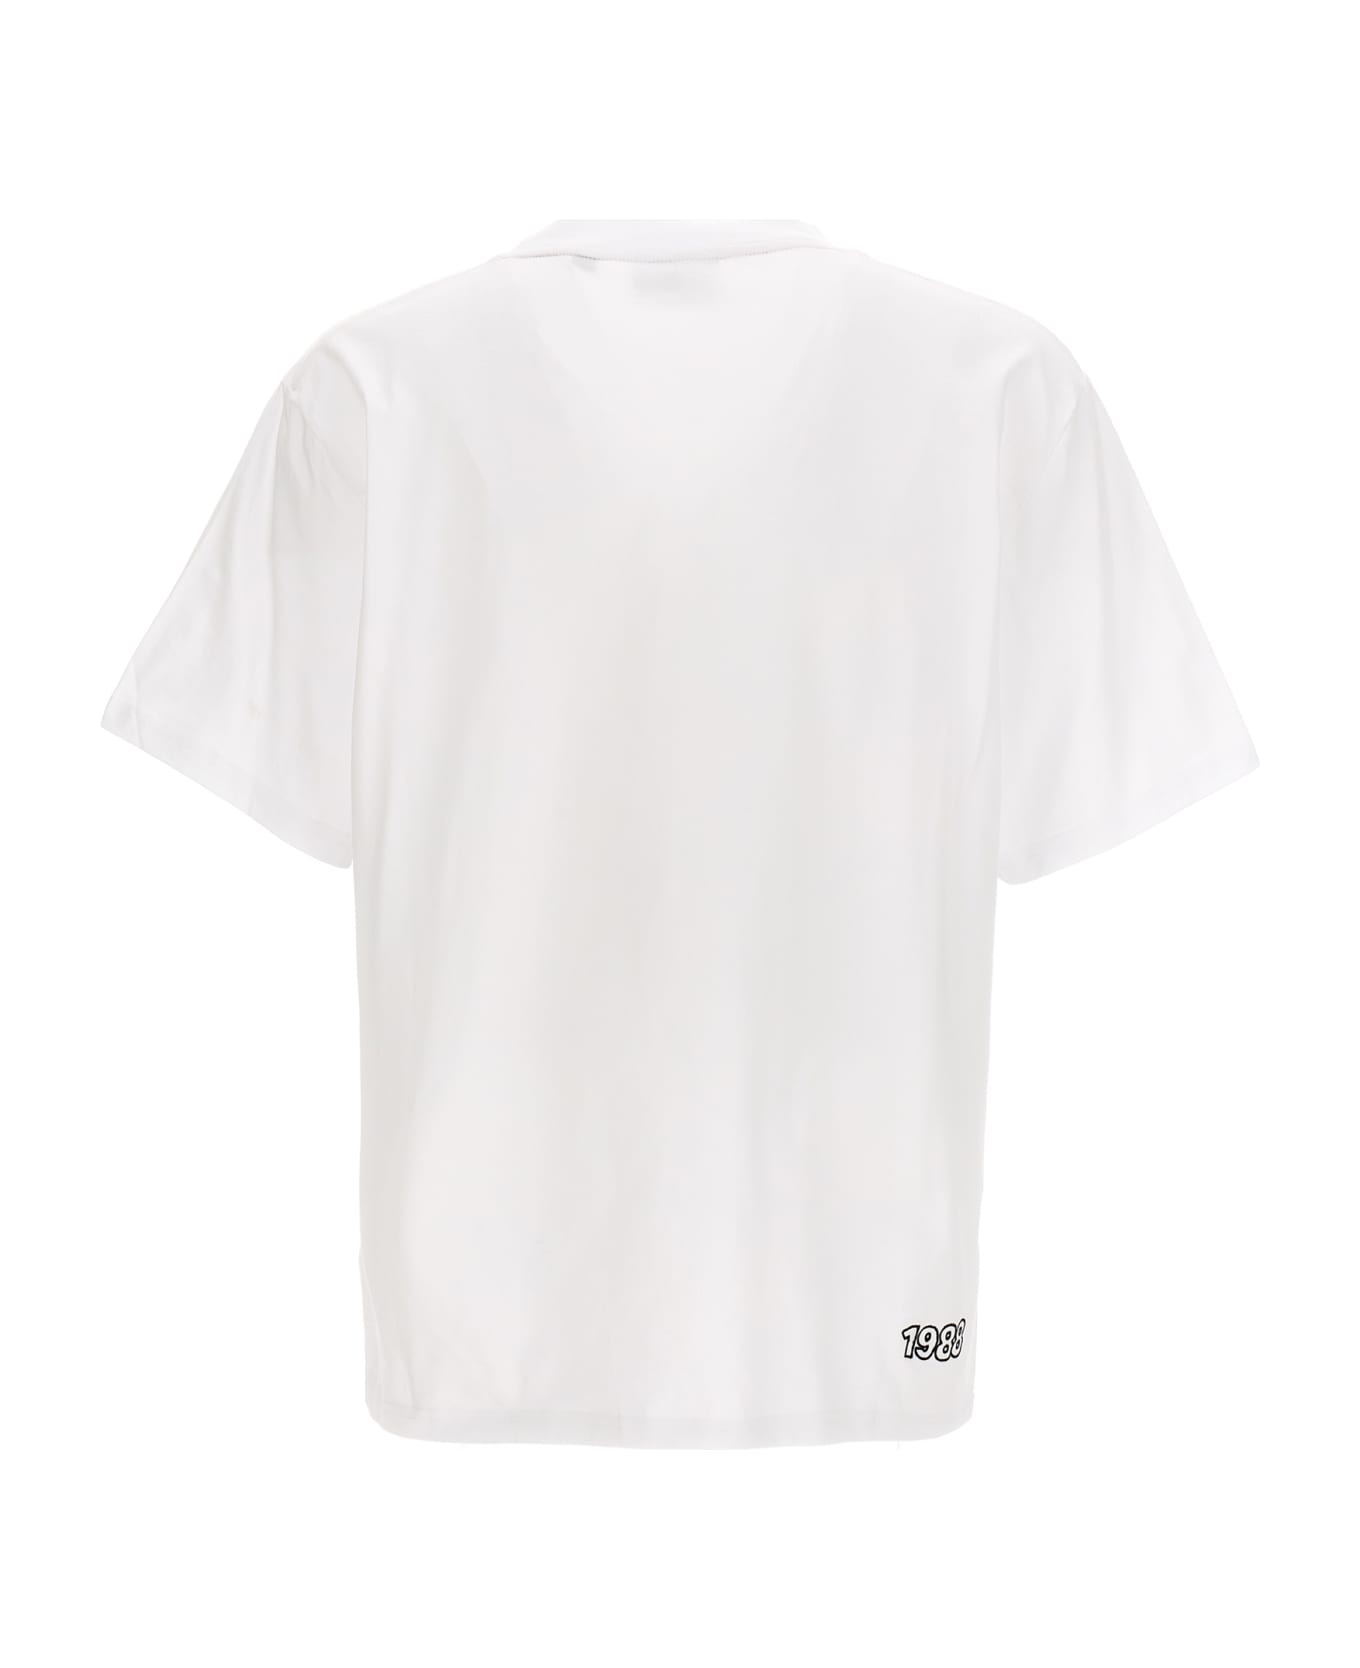 GCDS Printed T-shirt - White シャツ